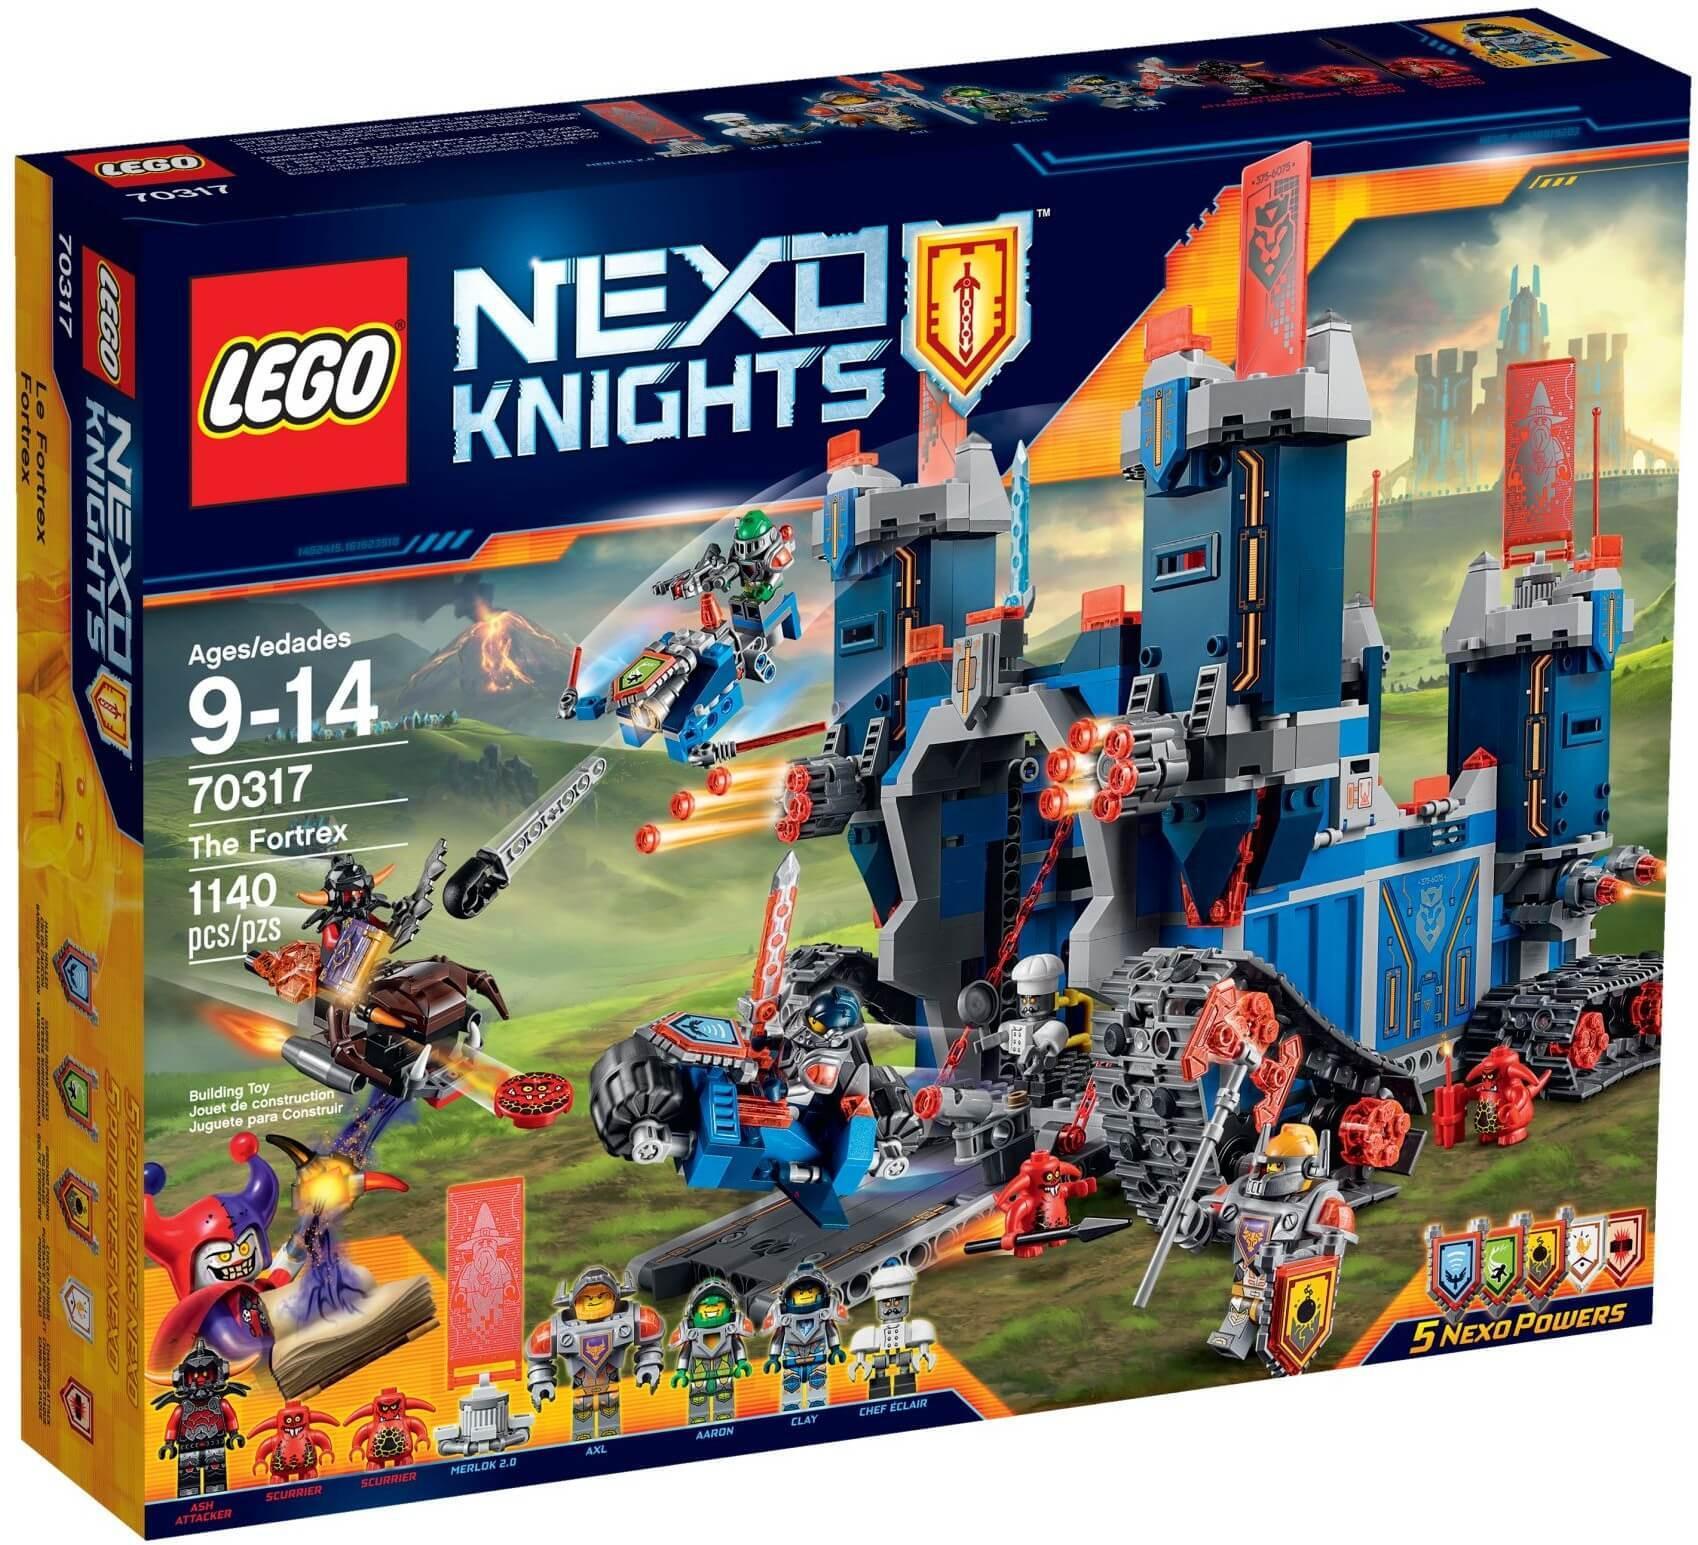 Mô hình LEGO Nexo Knights - Pháo đài hiệp sỹ 70317 (1140 mảnh ghép)